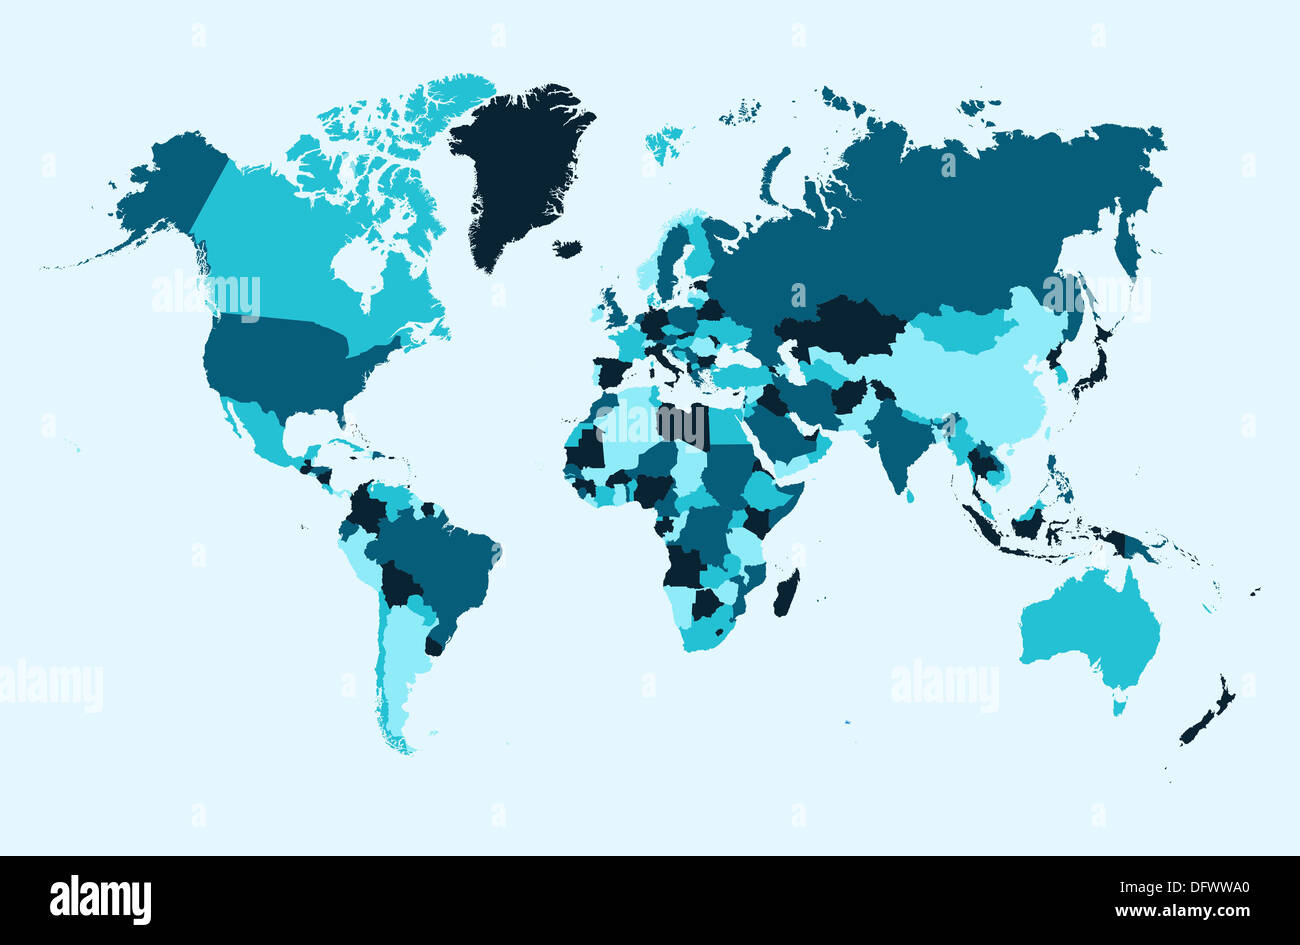 Welt Karte, blaue Länder Atlas Abbildung. EPS10 Vektor-Datei organisiert in Schichten für die einfache Bearbeitung. Stockfoto